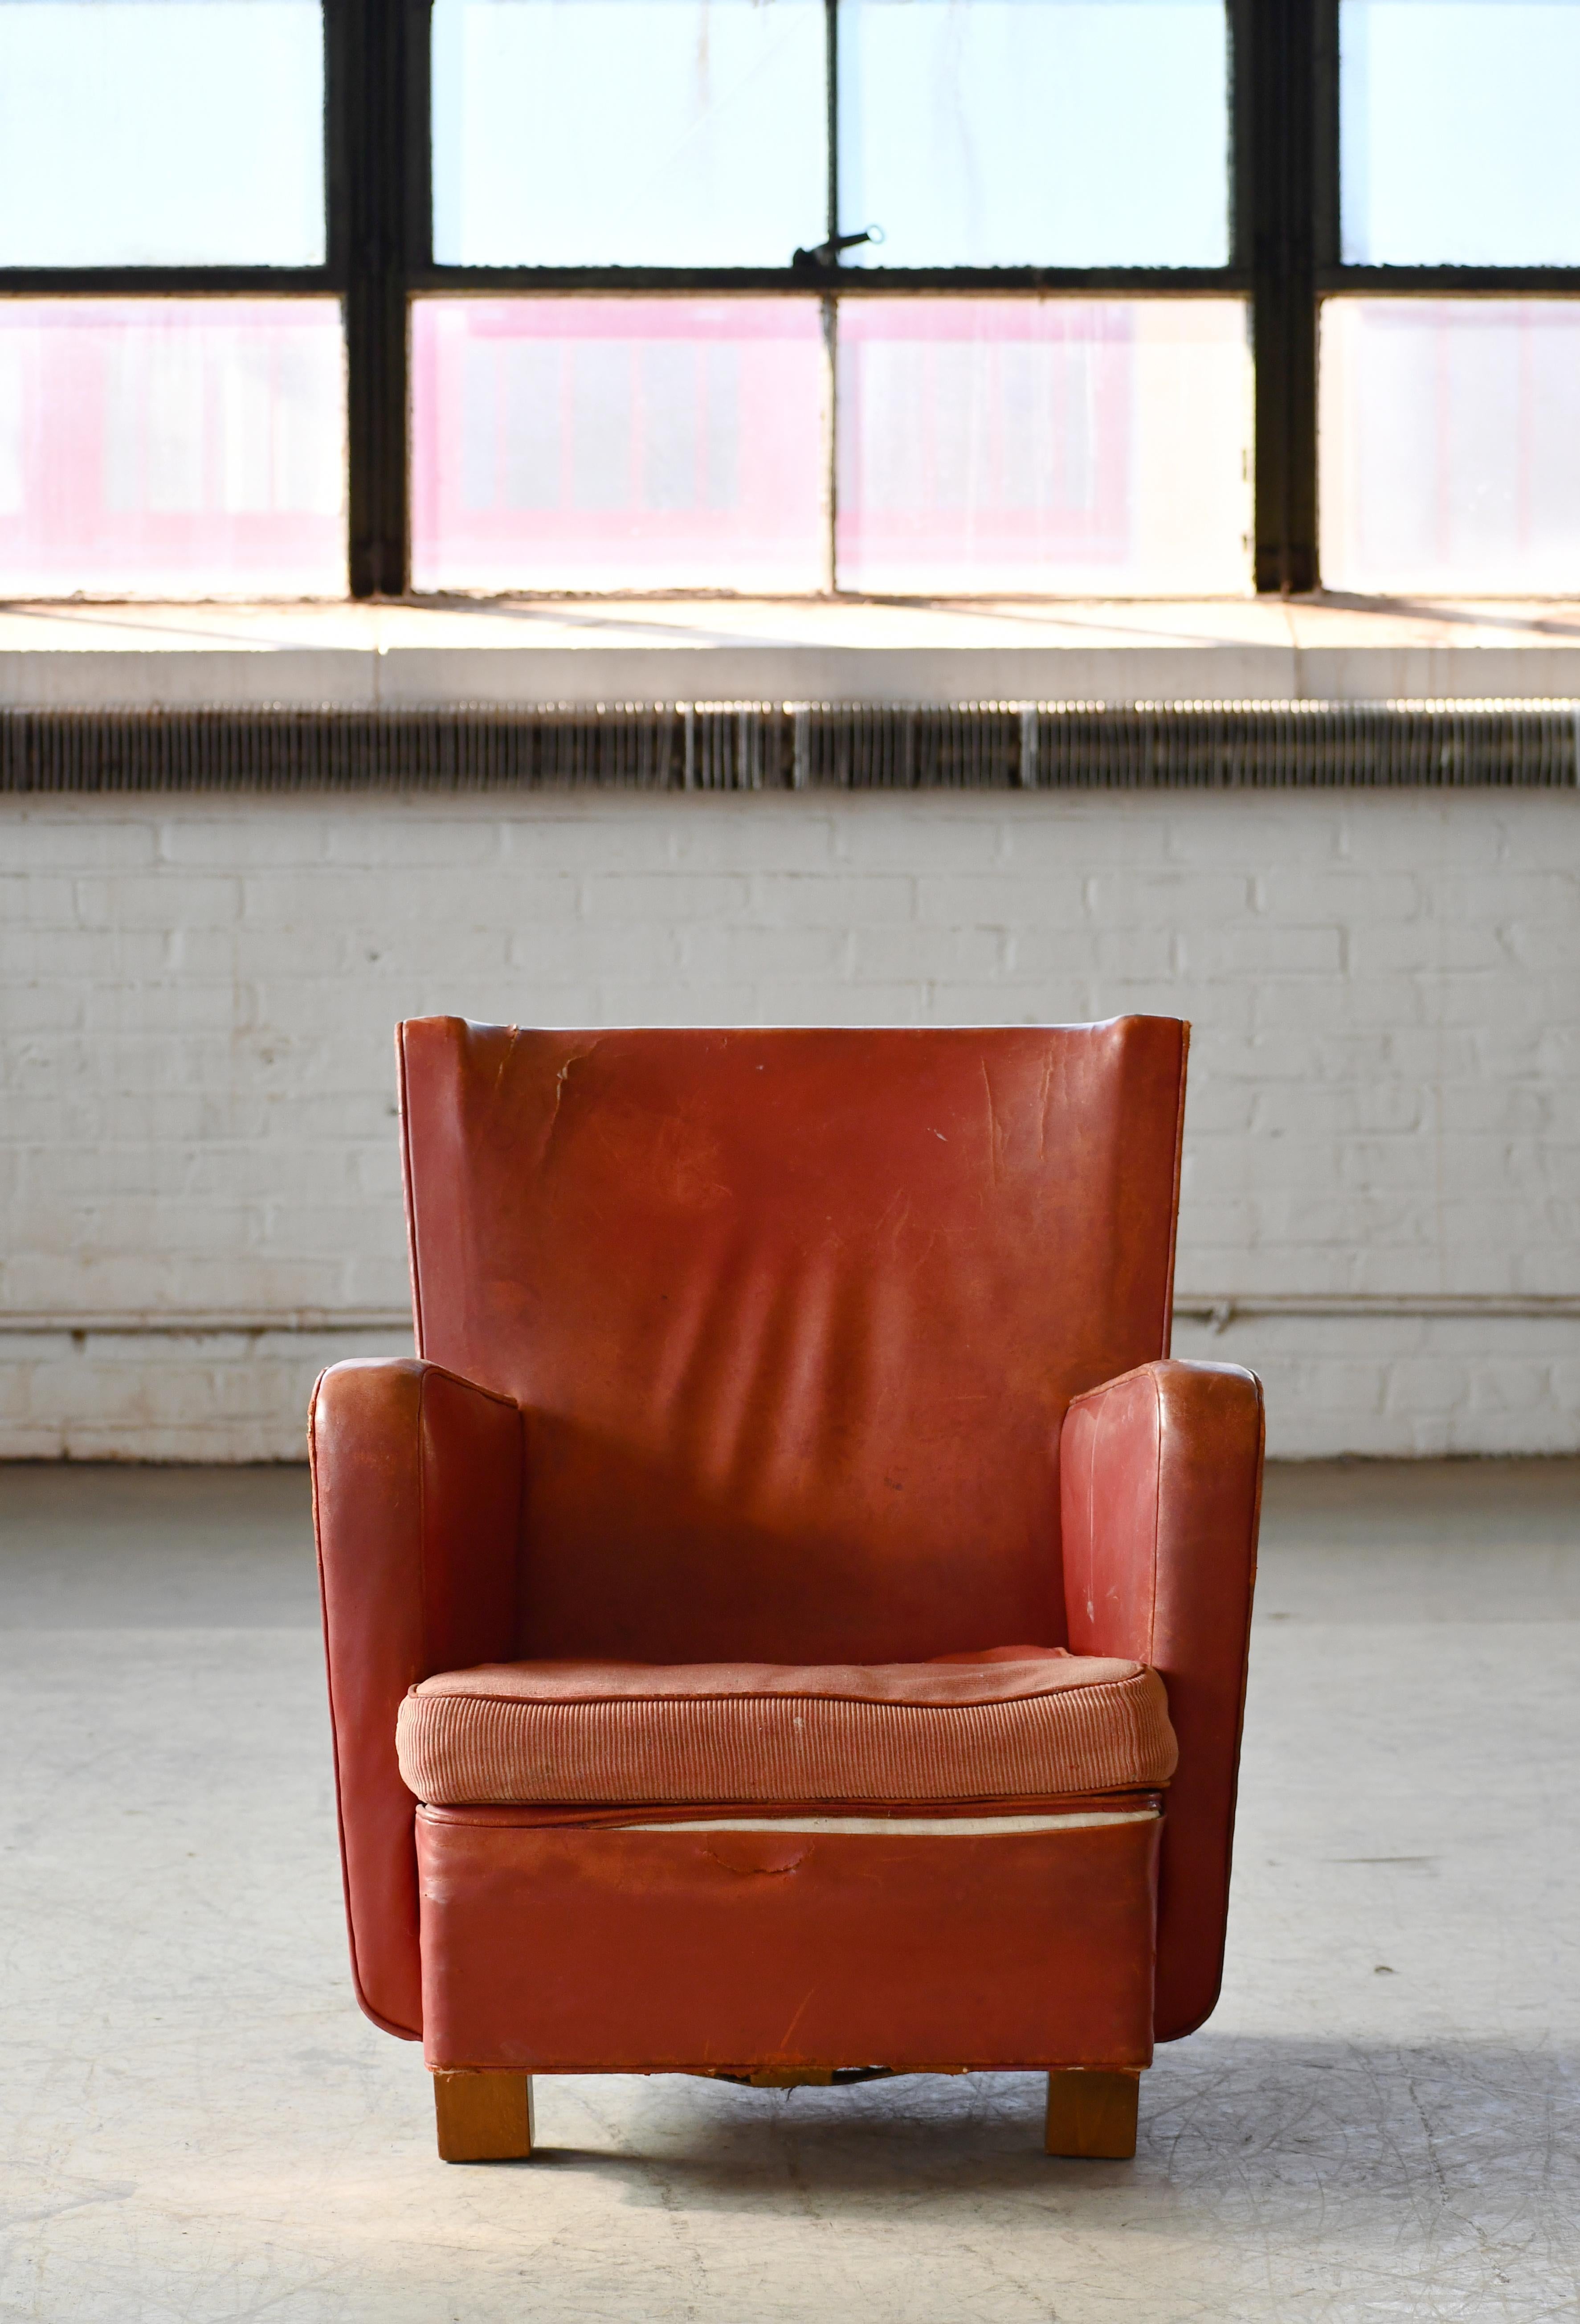 Fantastischer dänischer Sessel eines unbekannten Herstellers aus den späten 1930er Jahren. Die Stühle haben ein sehr kantiges und modernes Aussehen mit losen Kissen über dem Sitz mit Spiralfedern, was zu dieser Zeit nicht üblich war. Sie haben auch